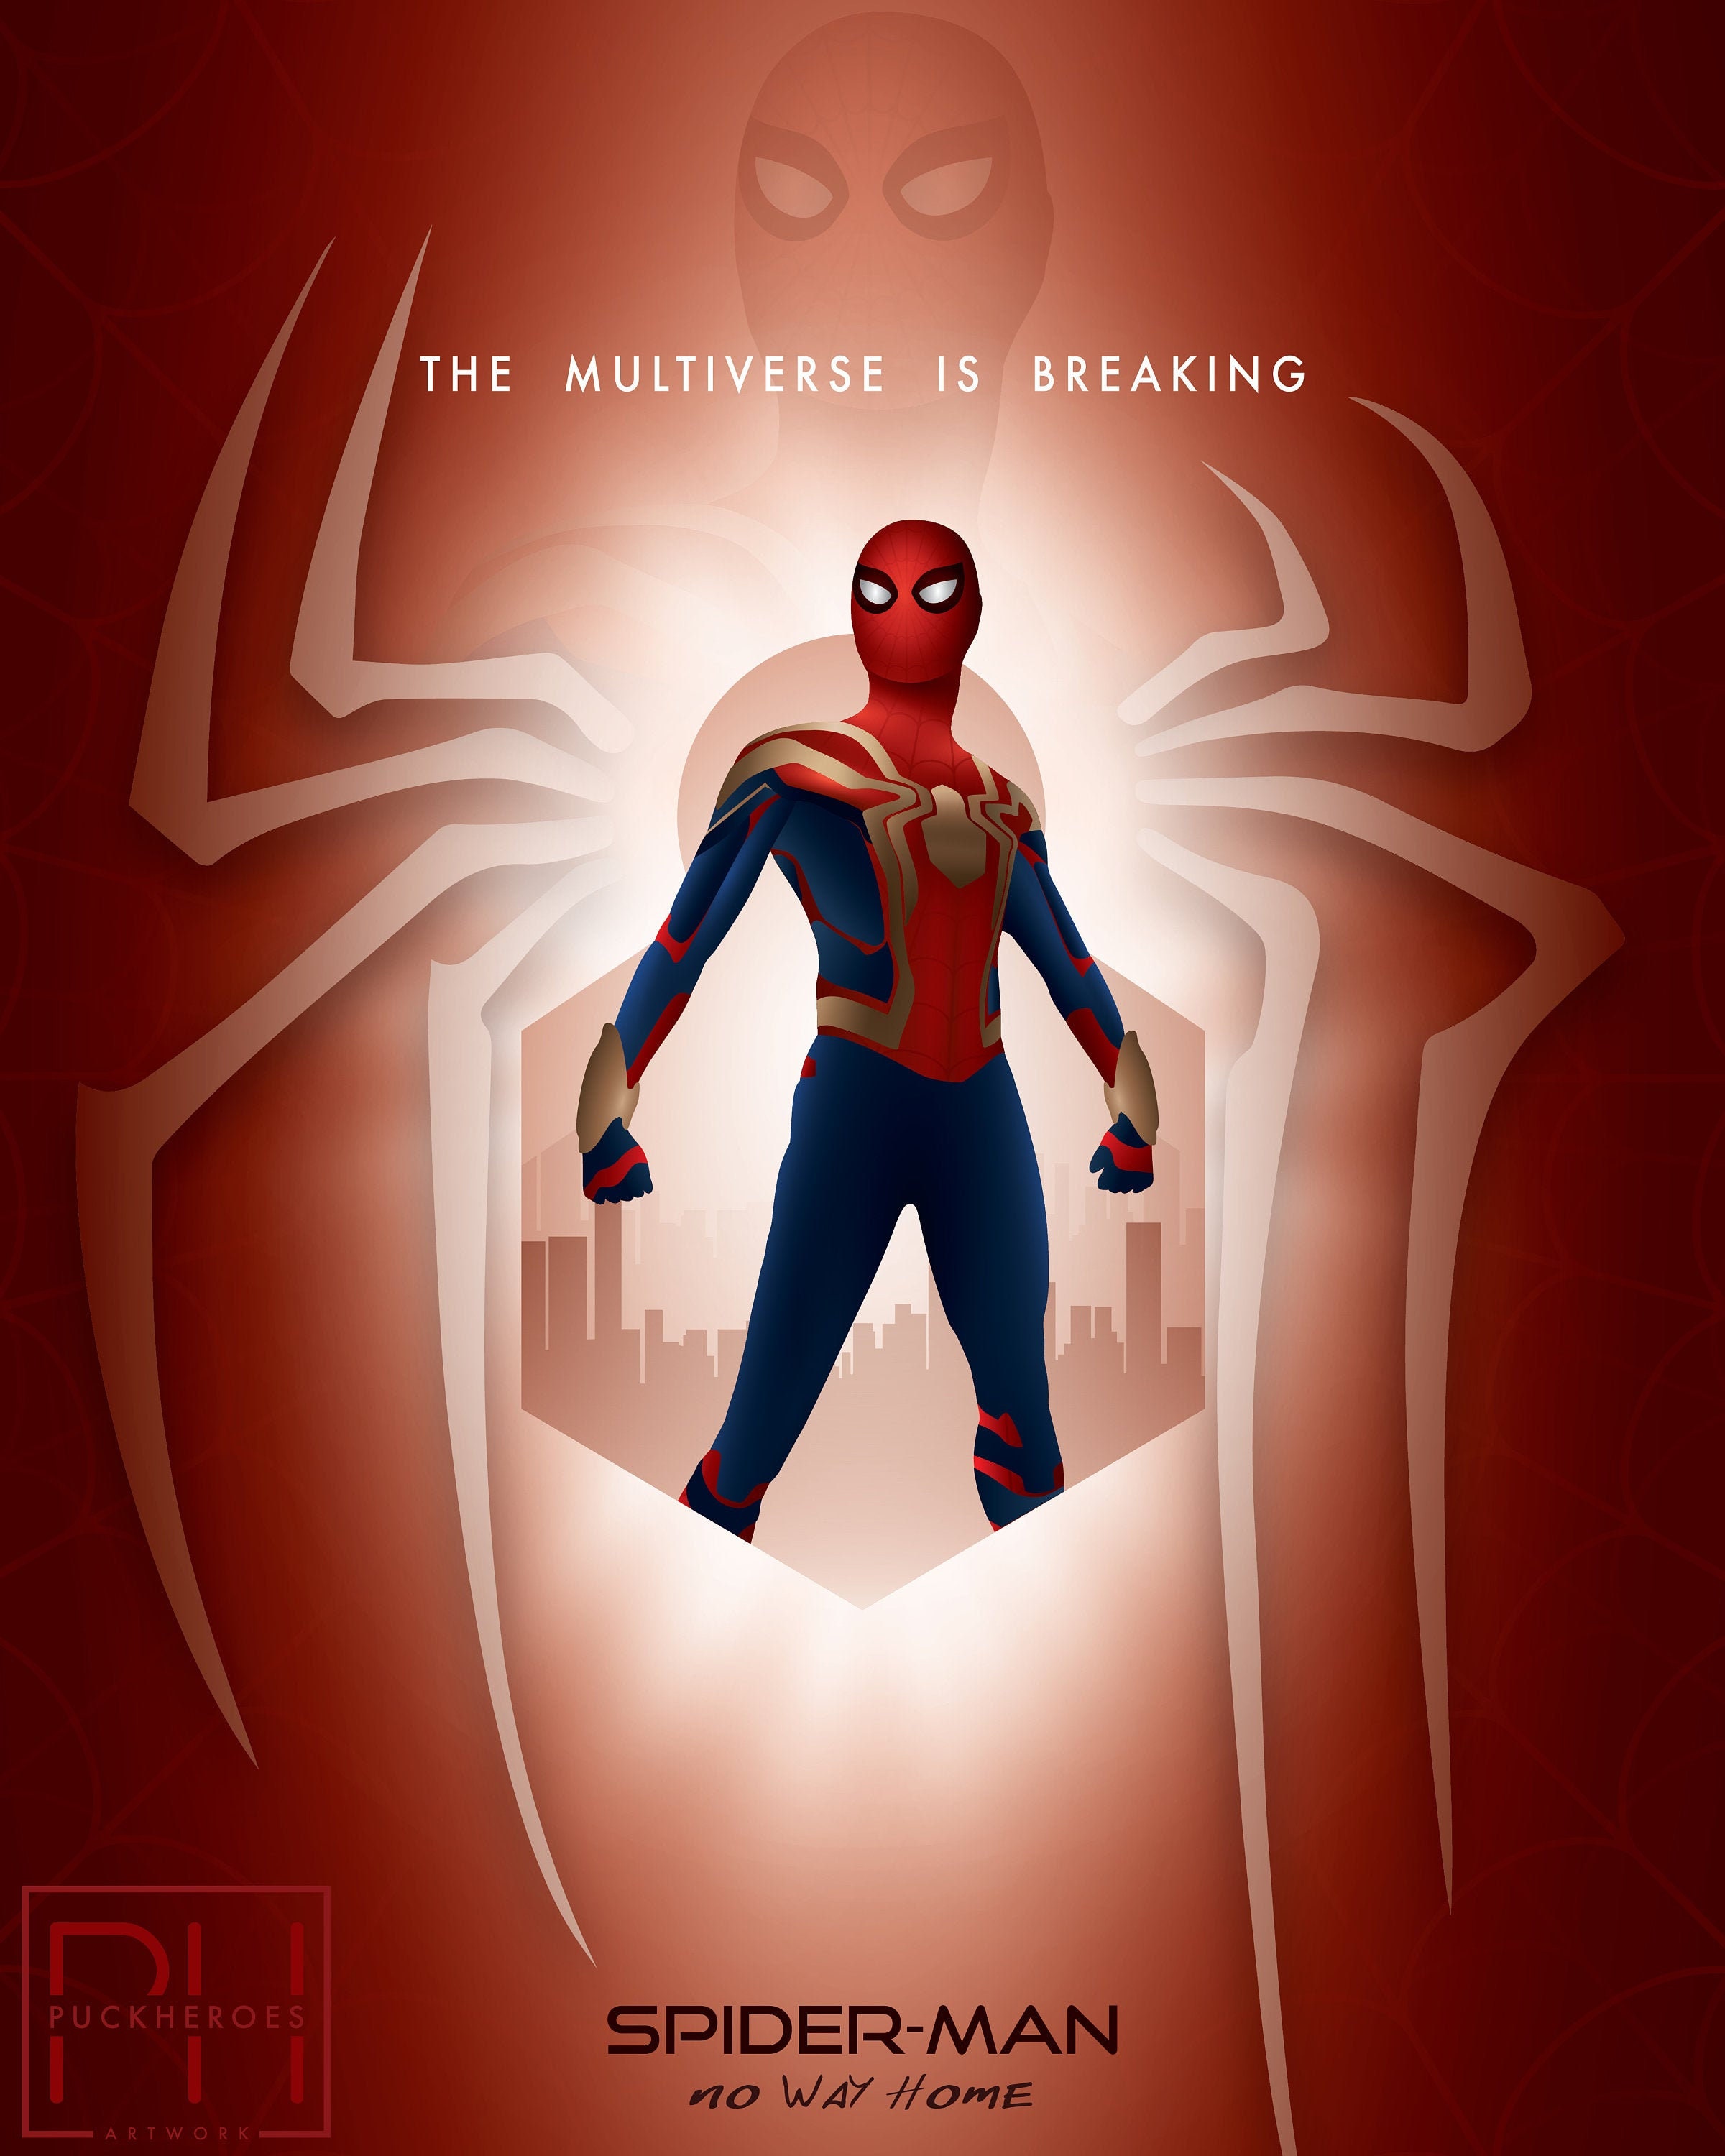 Spider-Man No Way Home - Minimalist Poster Design - 8x10 Print